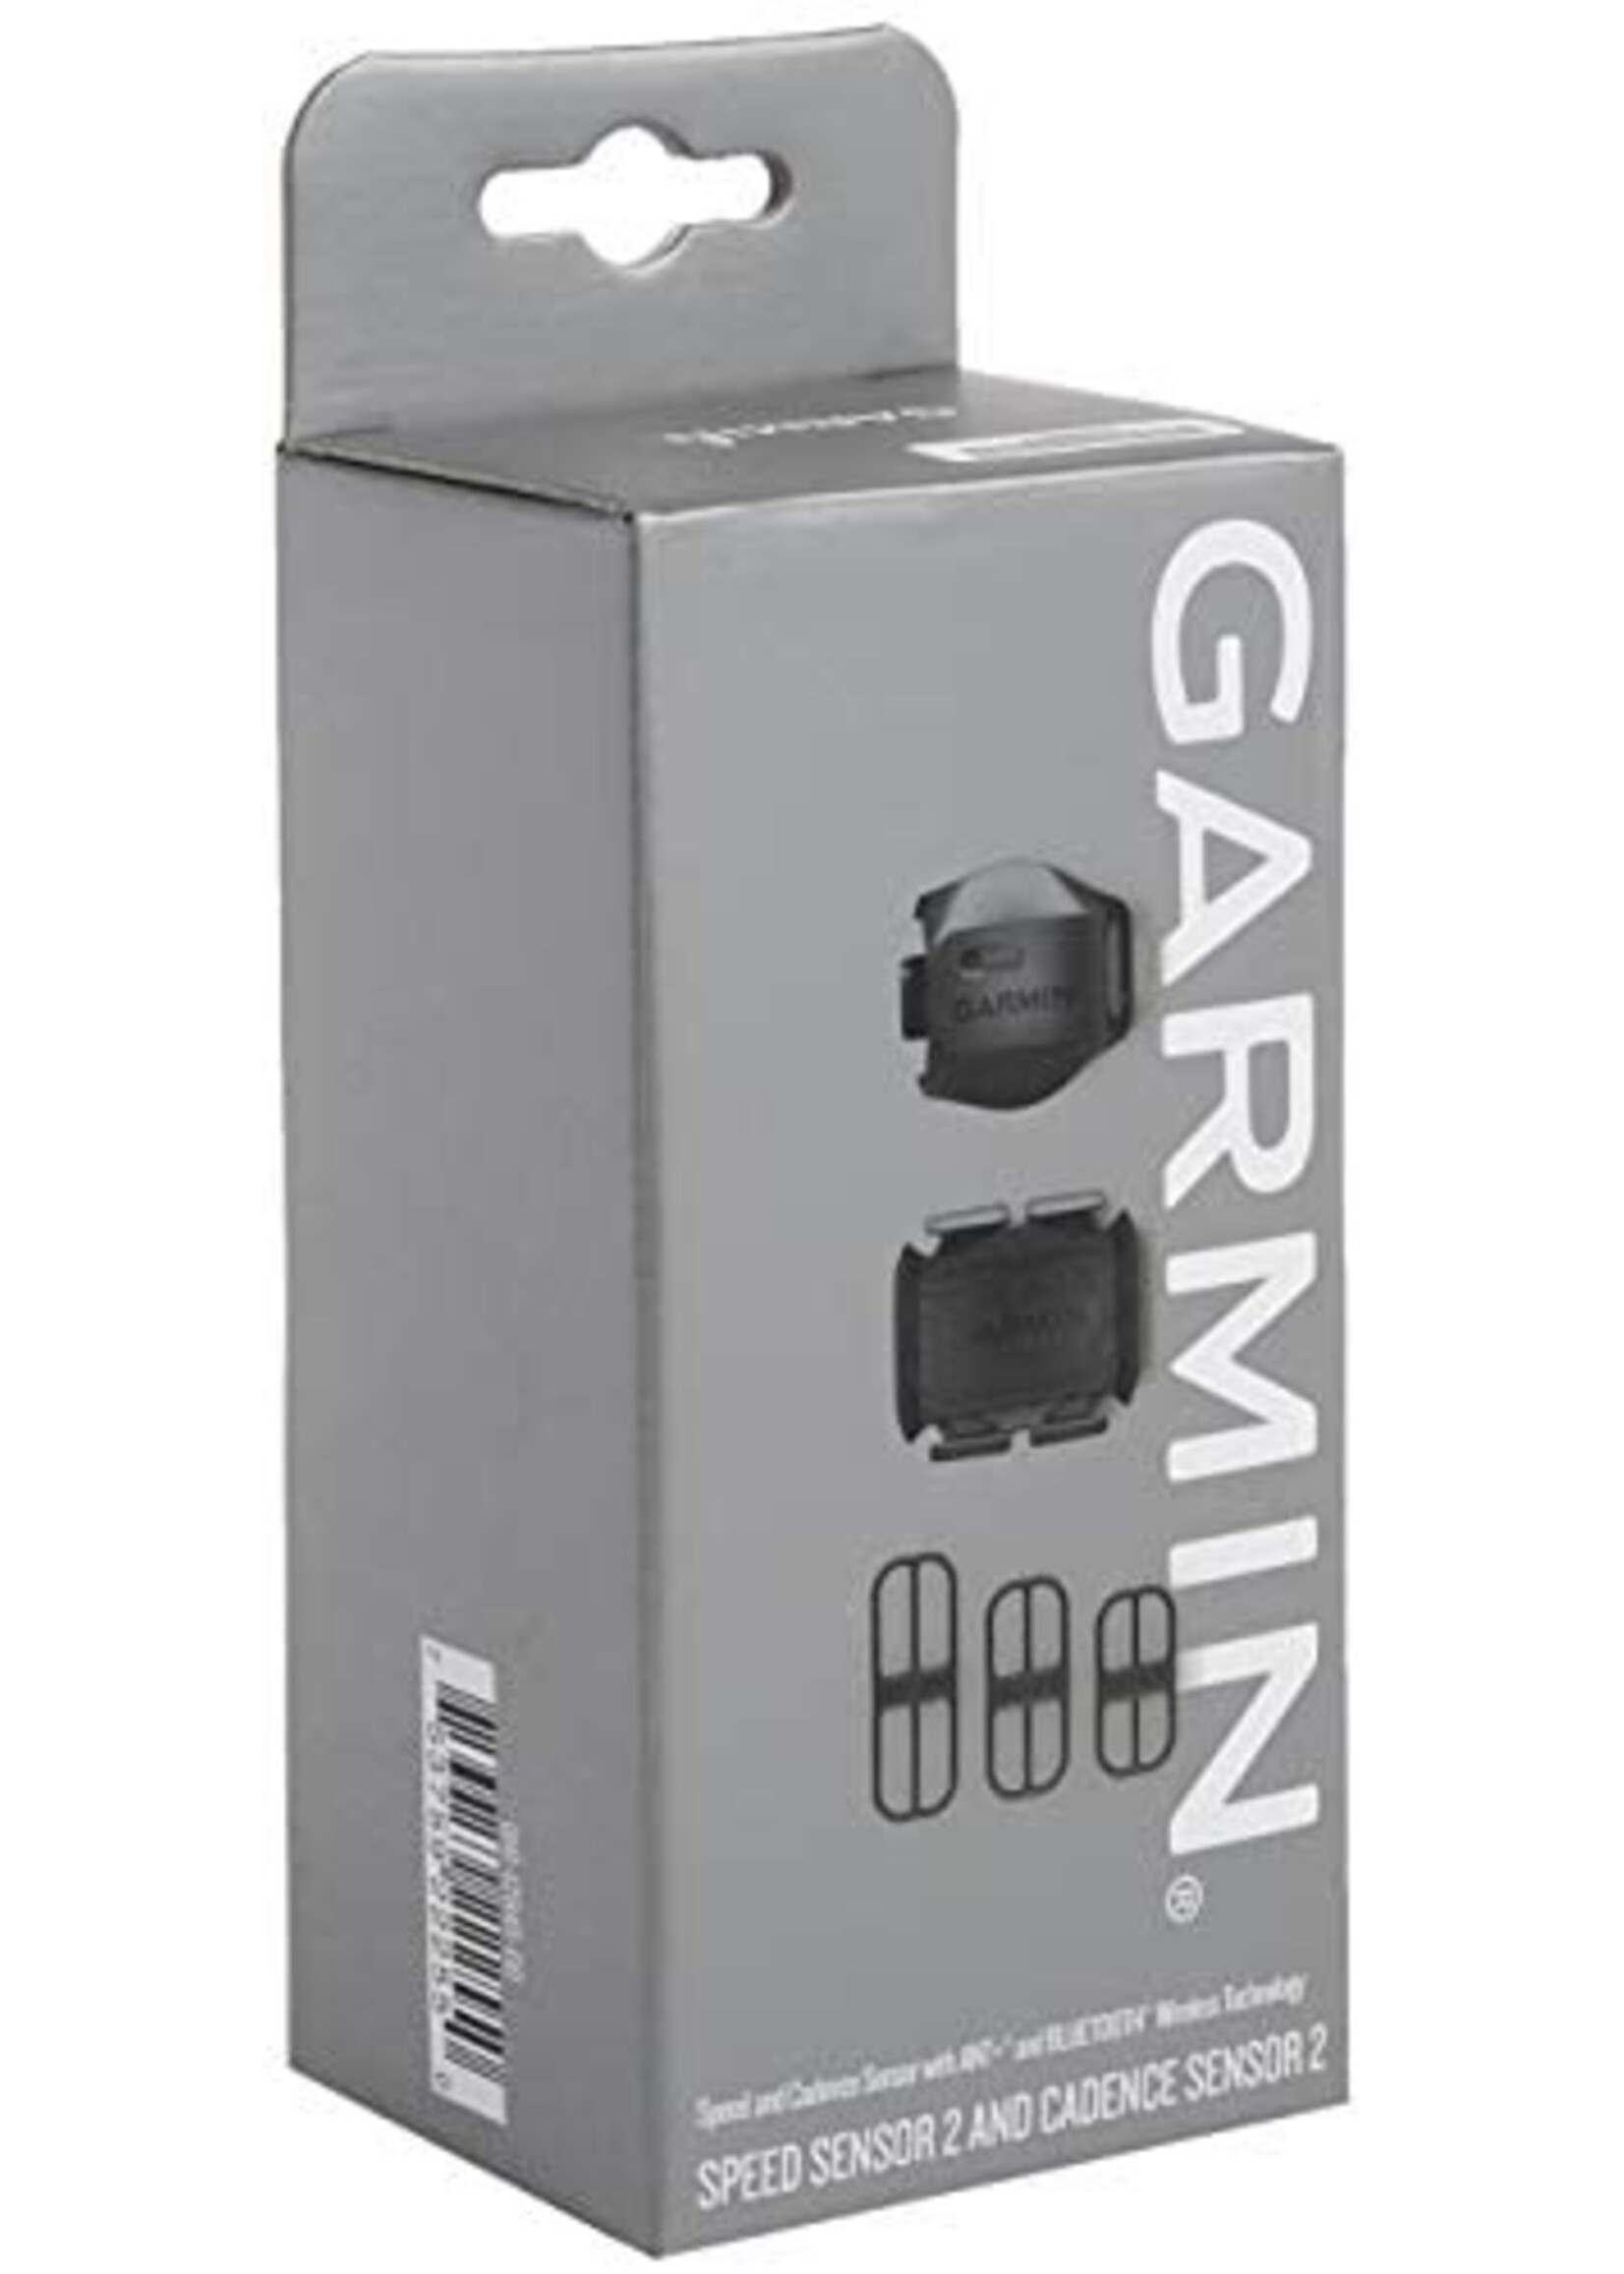 Garmin Garmin, Ensemble Speed Sensor 2/Cadence Sensor 2